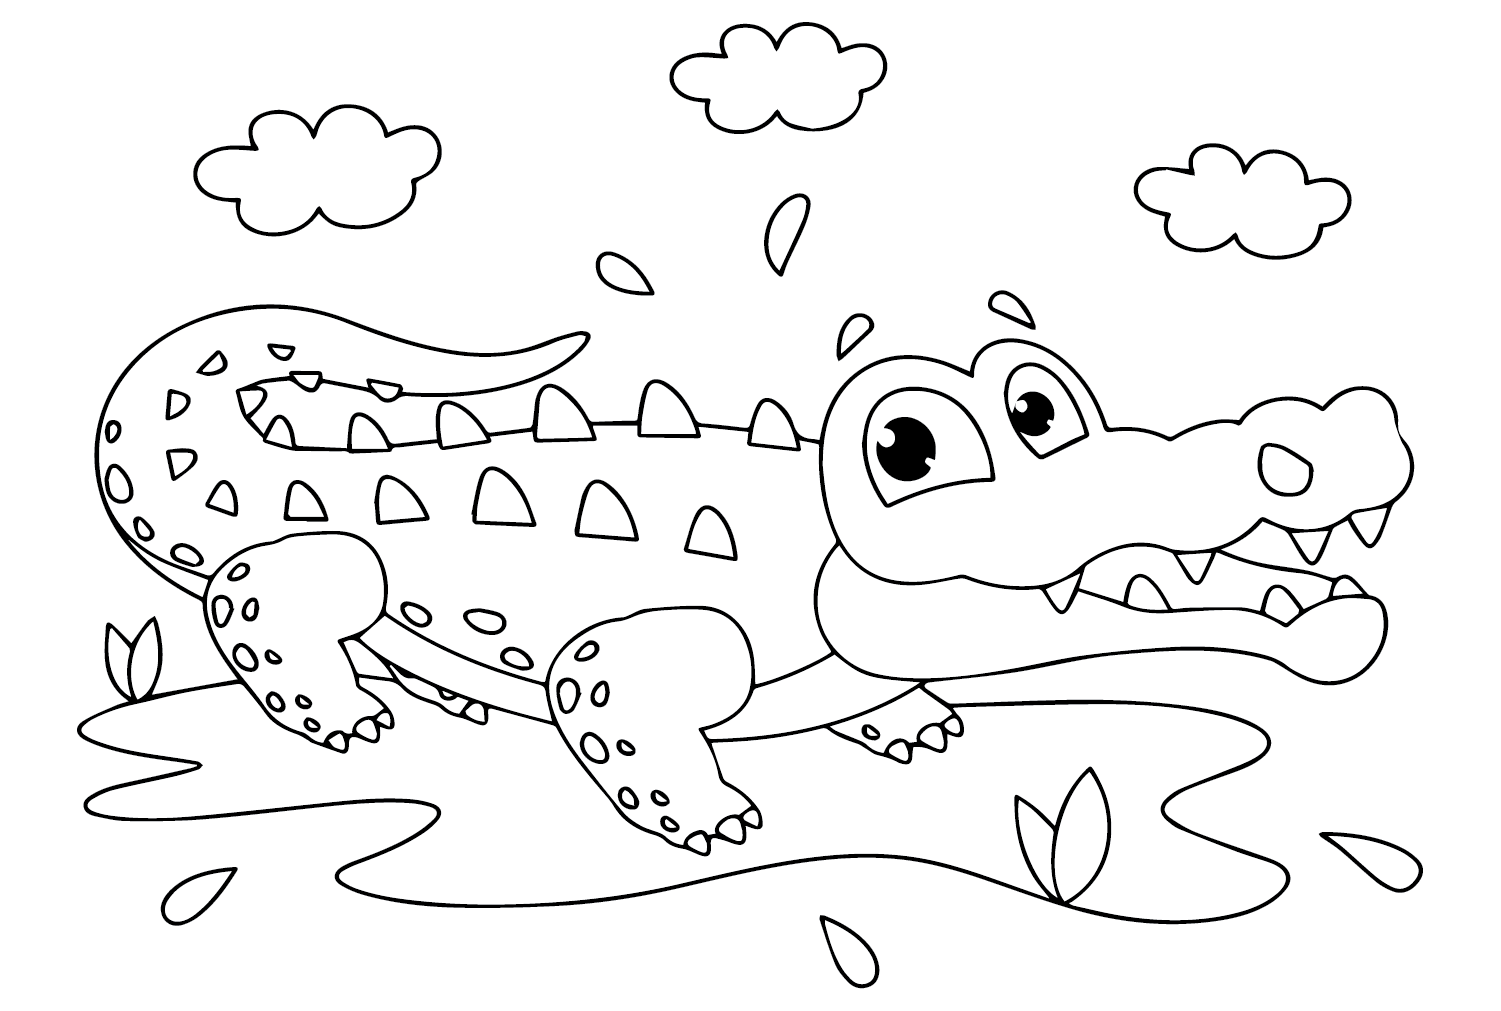 Folha para colorir de crocodilo de Crocodile